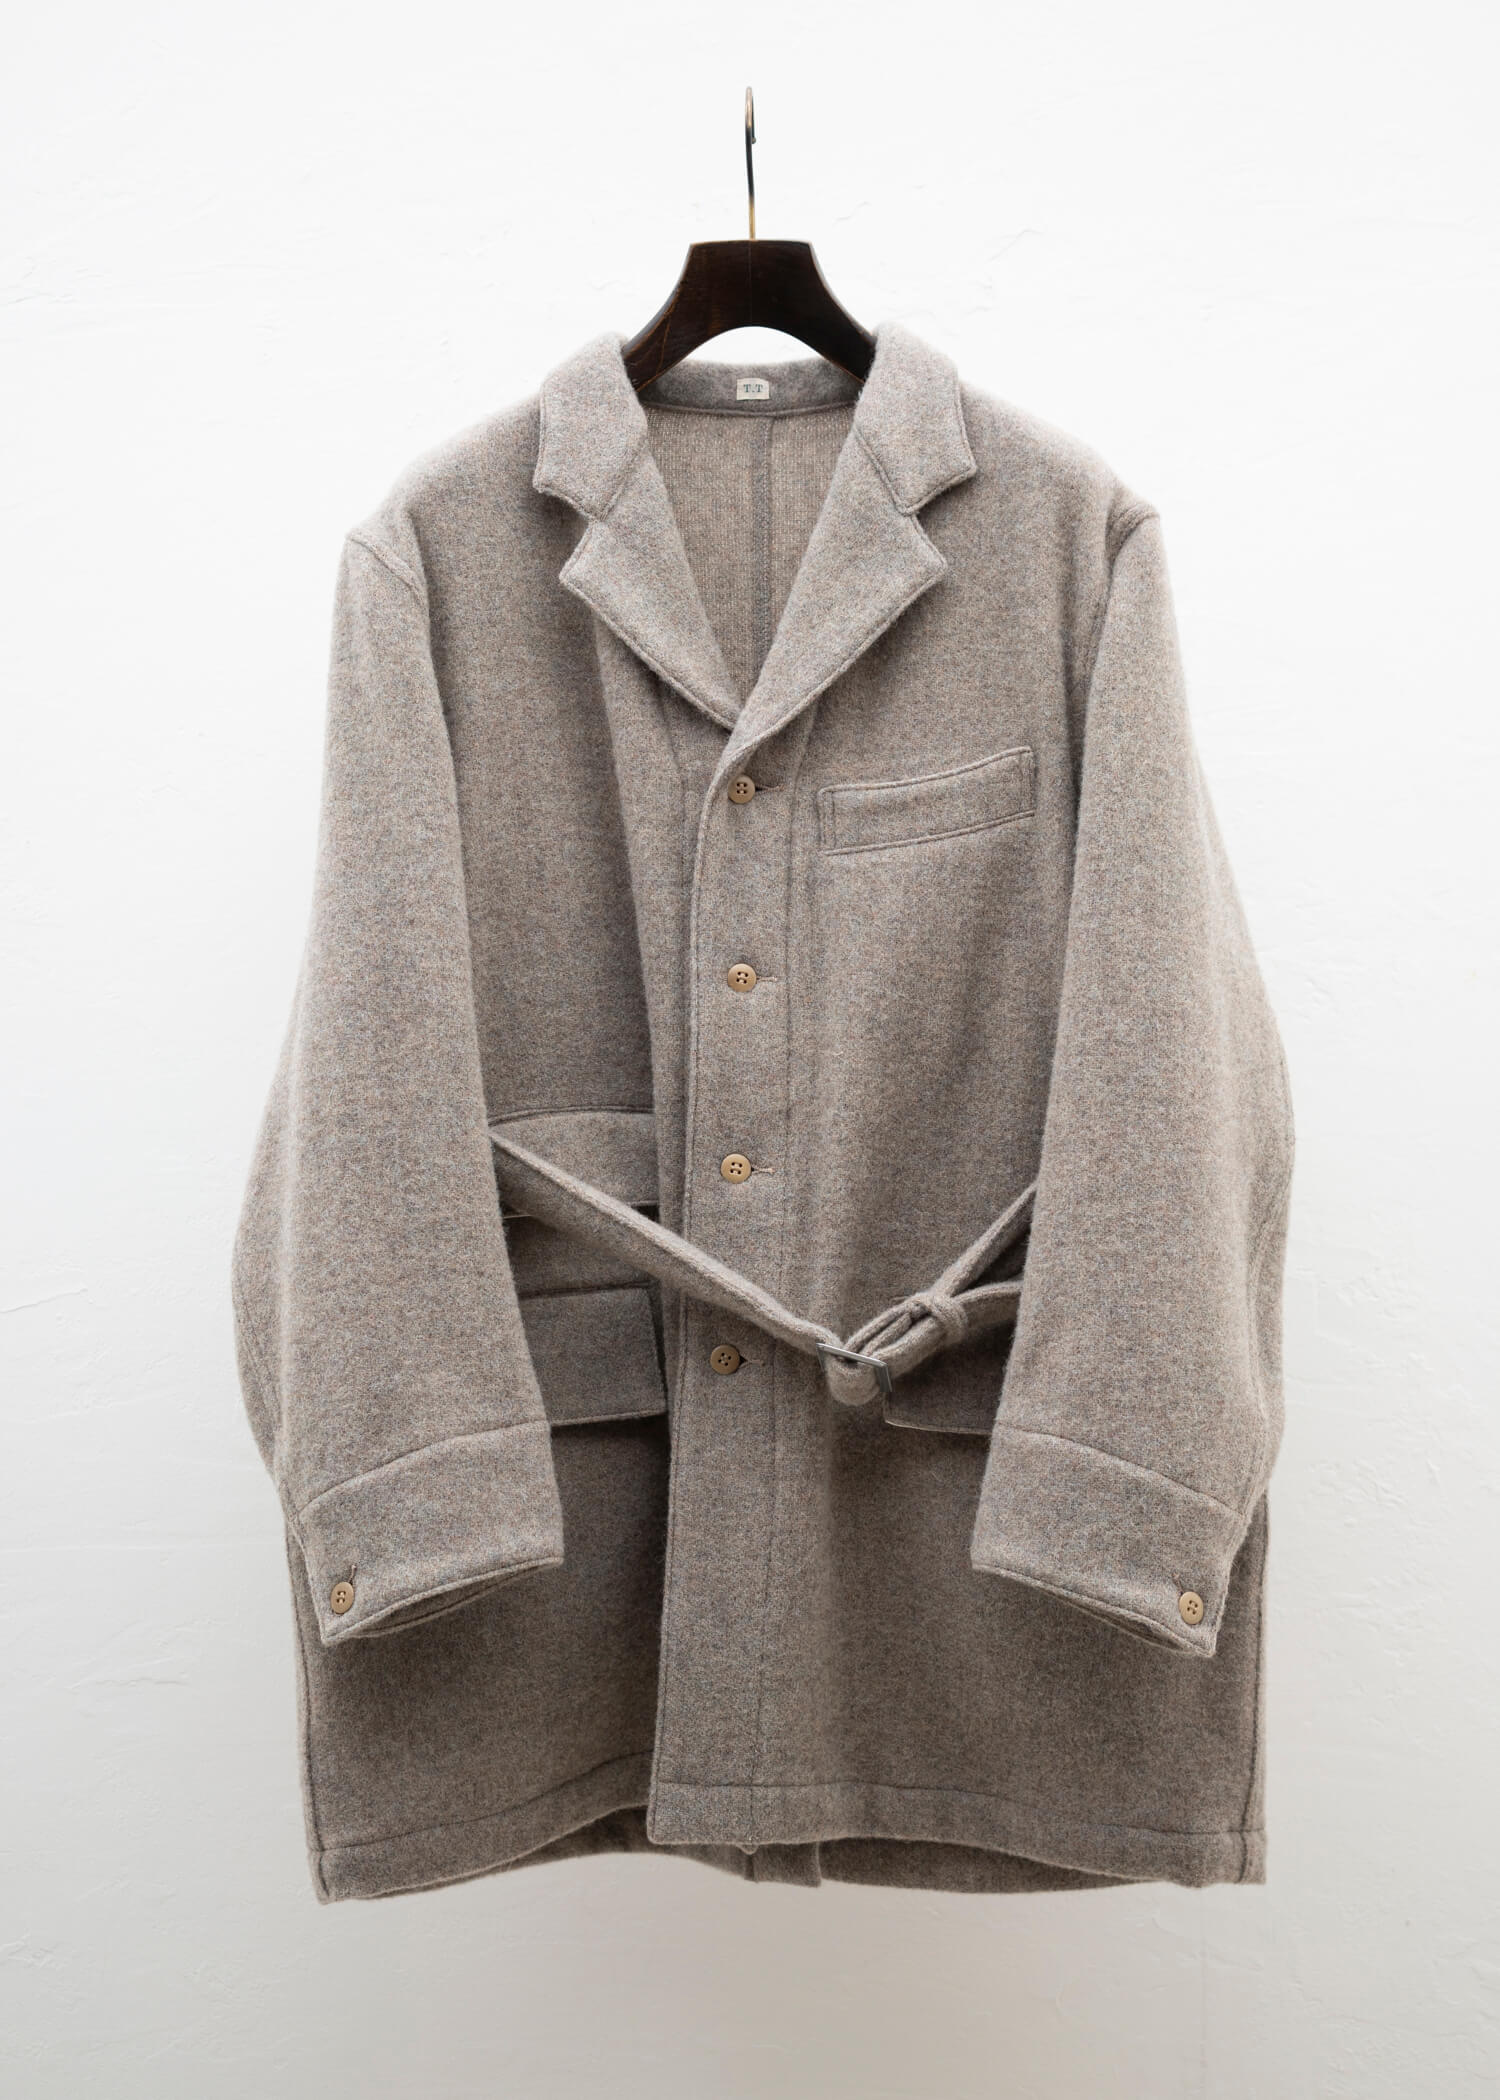 19,800円TAIGA TAKAHASHI belted engineer coat